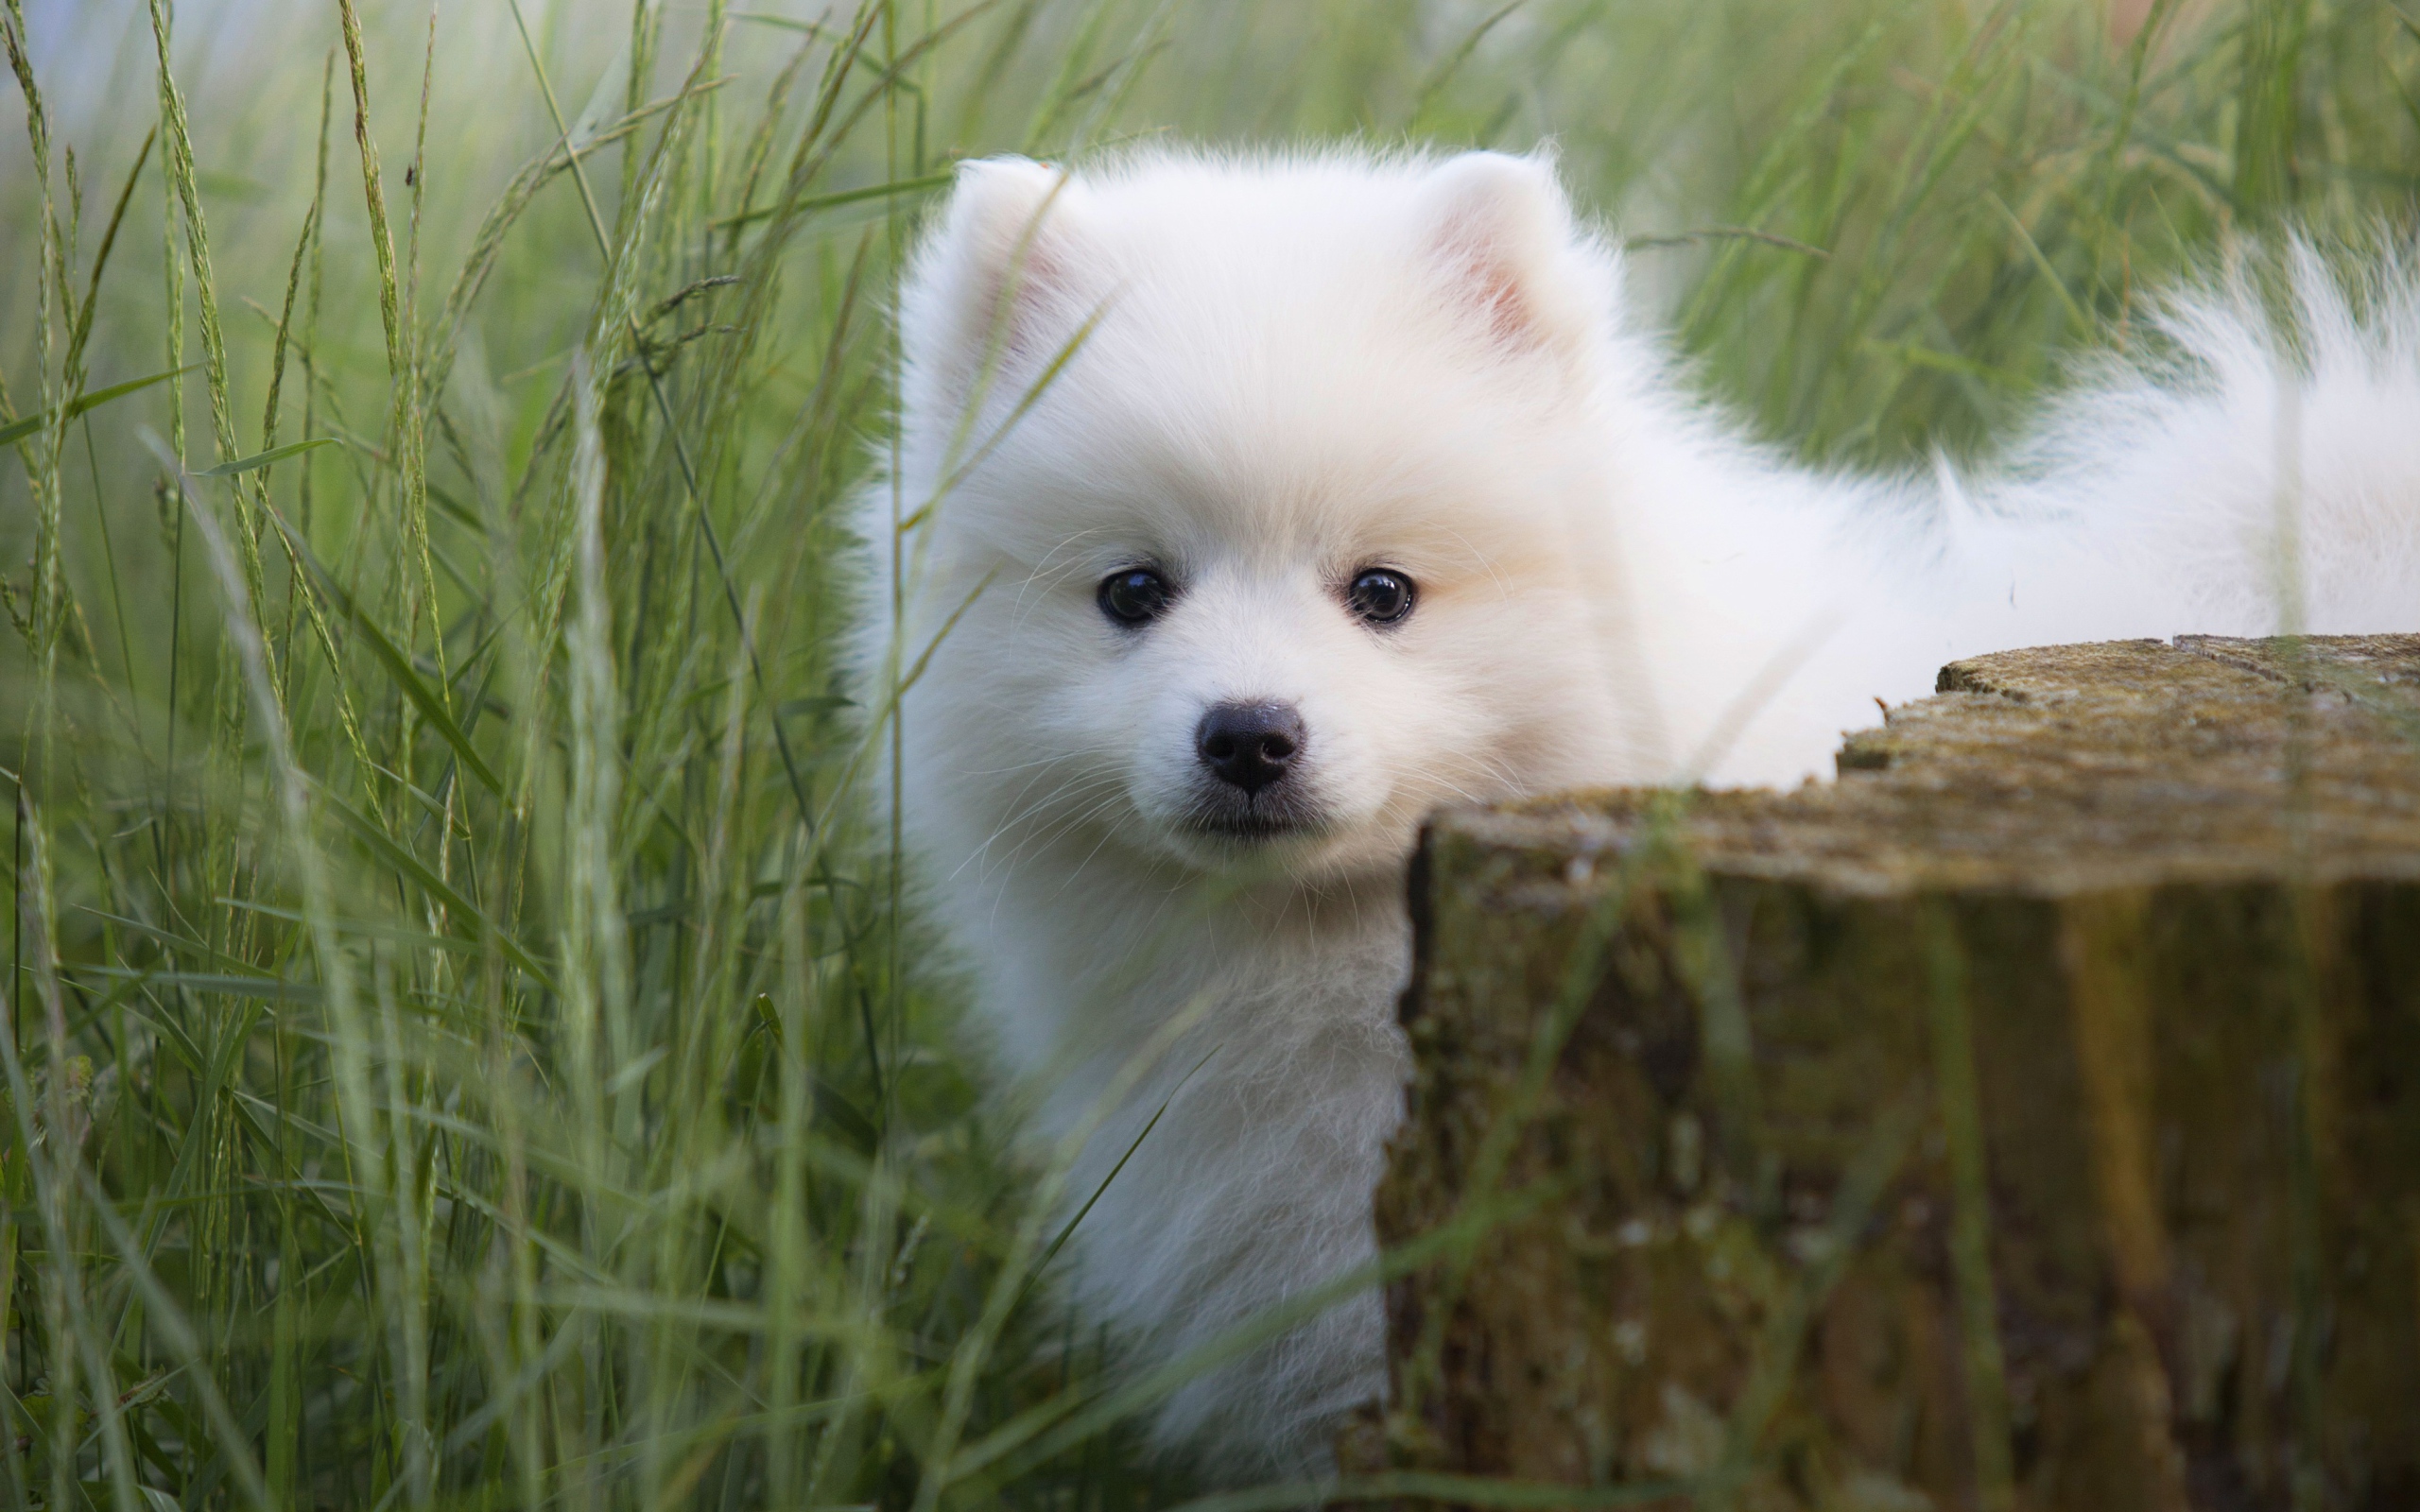 Little fluffy white Spitz puppy in green grass